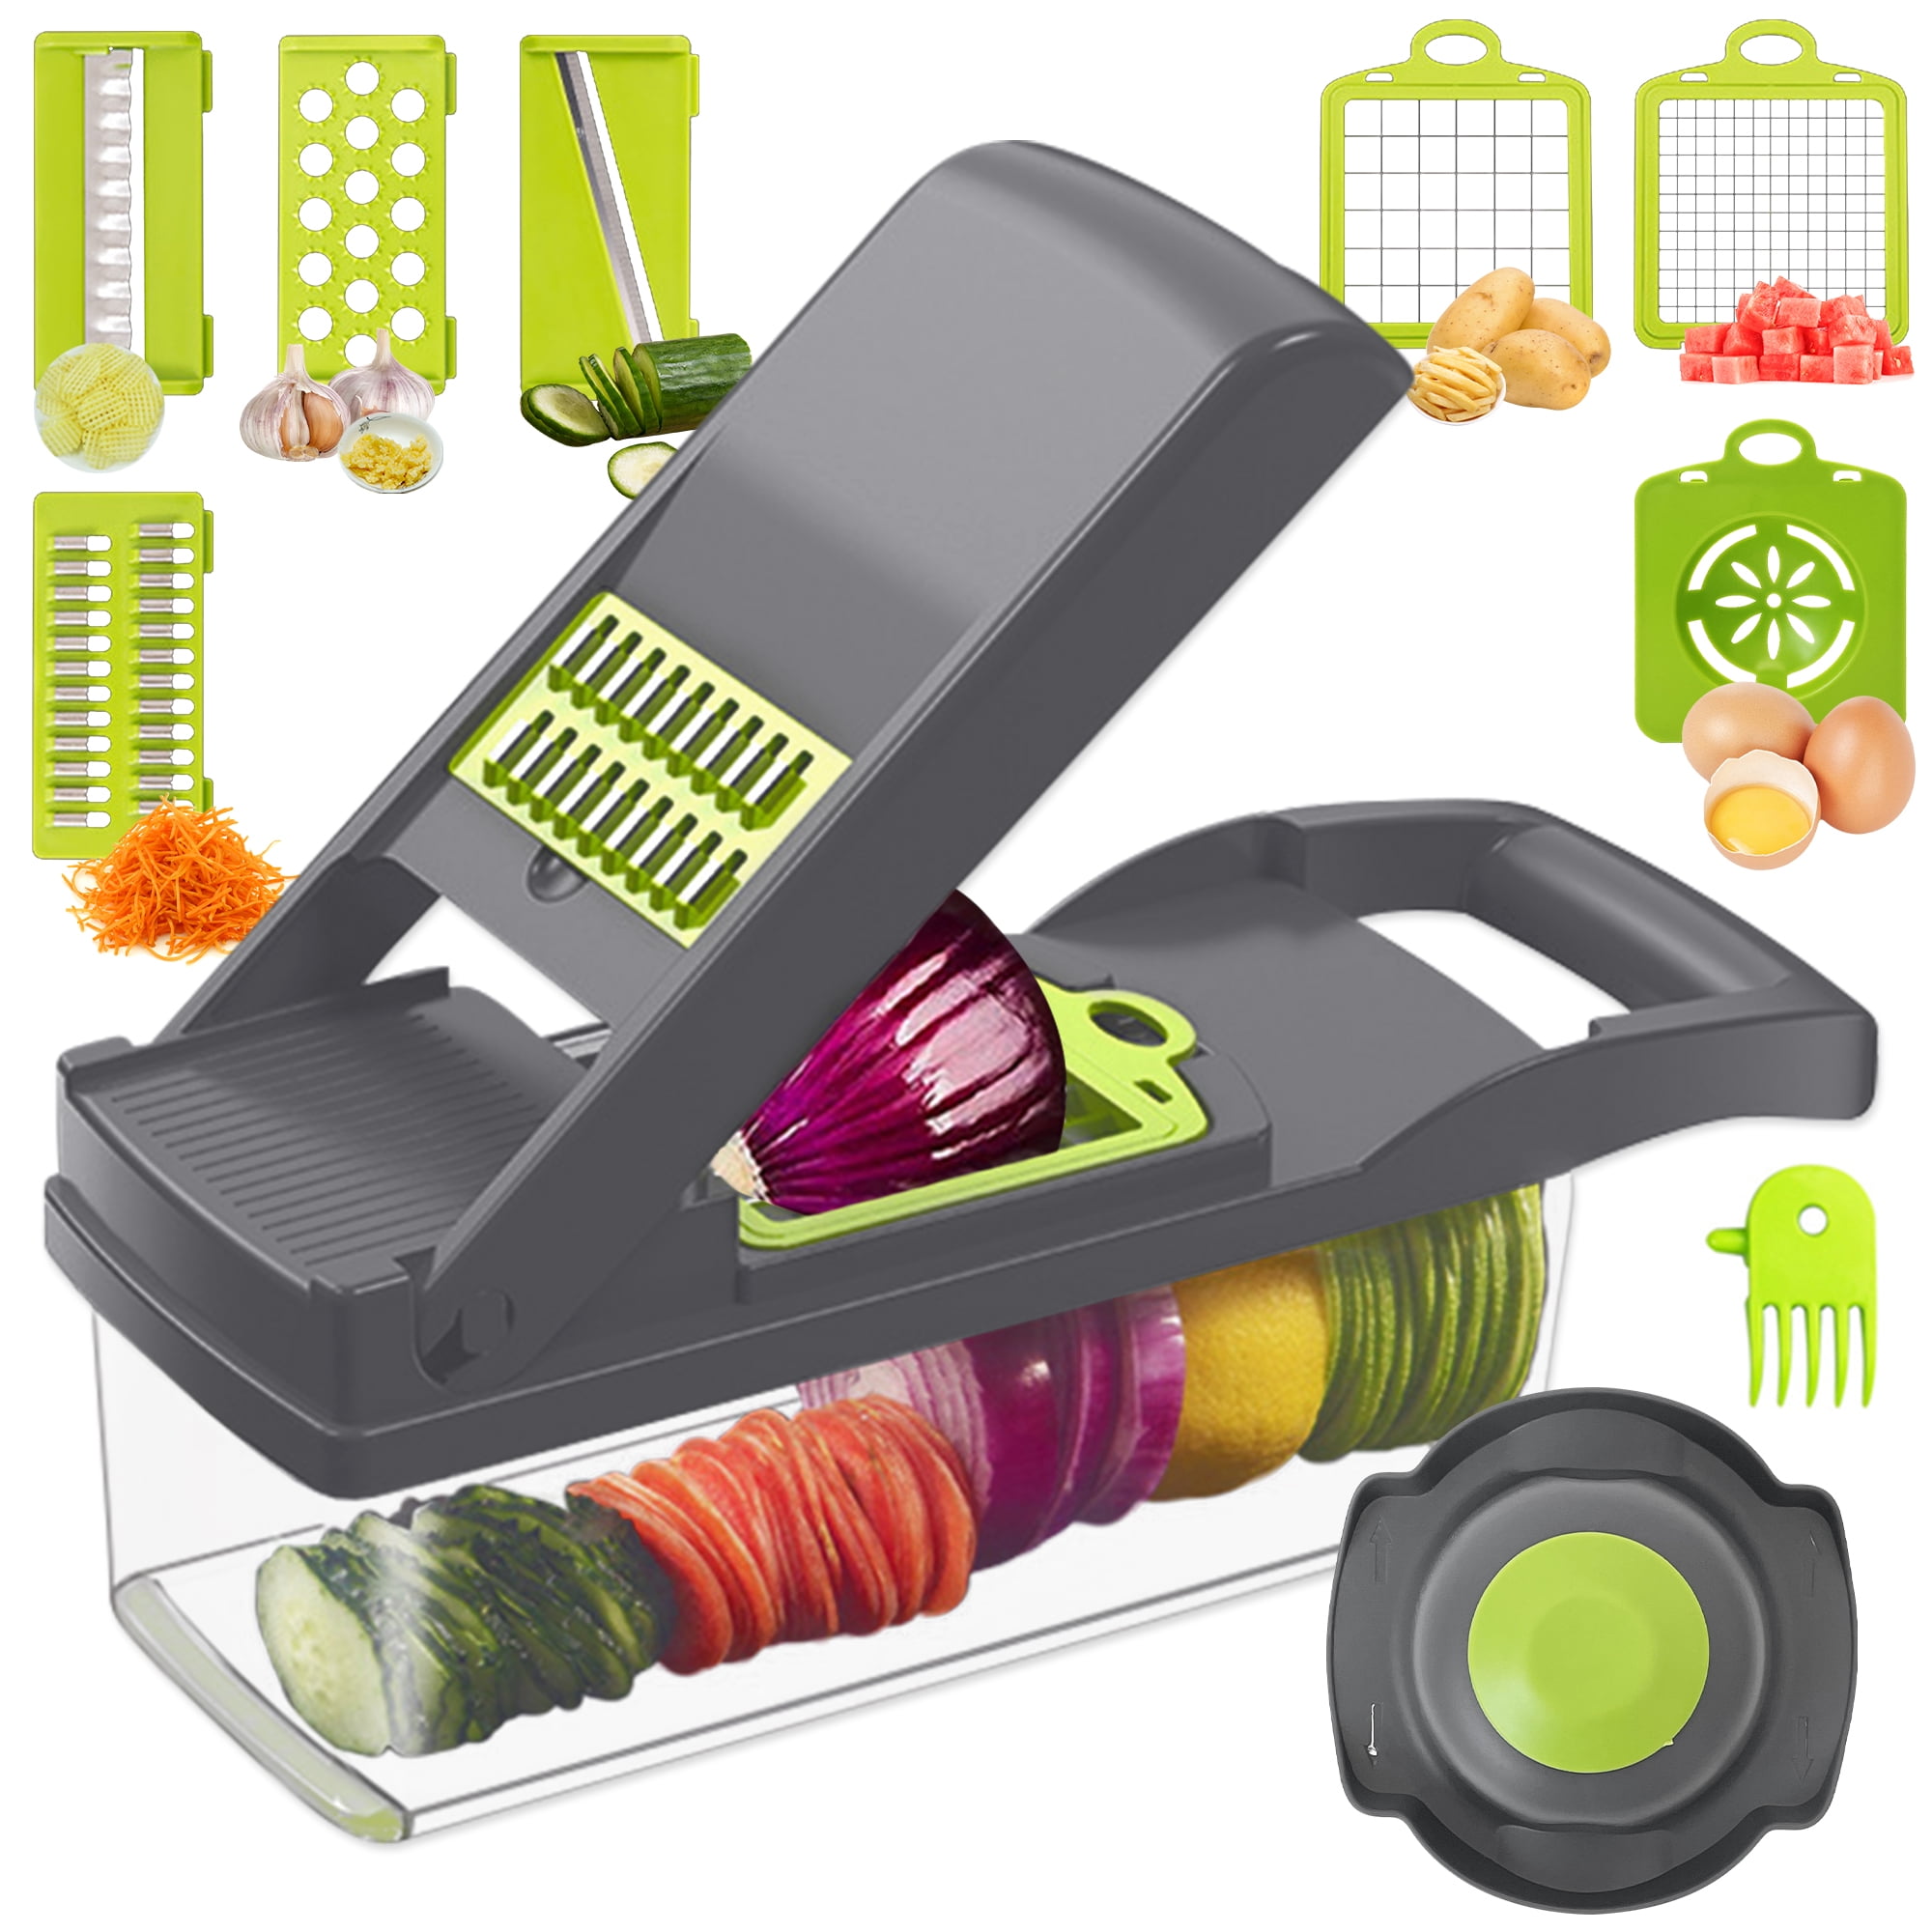 ADODU 13-in-1 Vegetable Chopper - Vegetable Slicer - Egg Separator